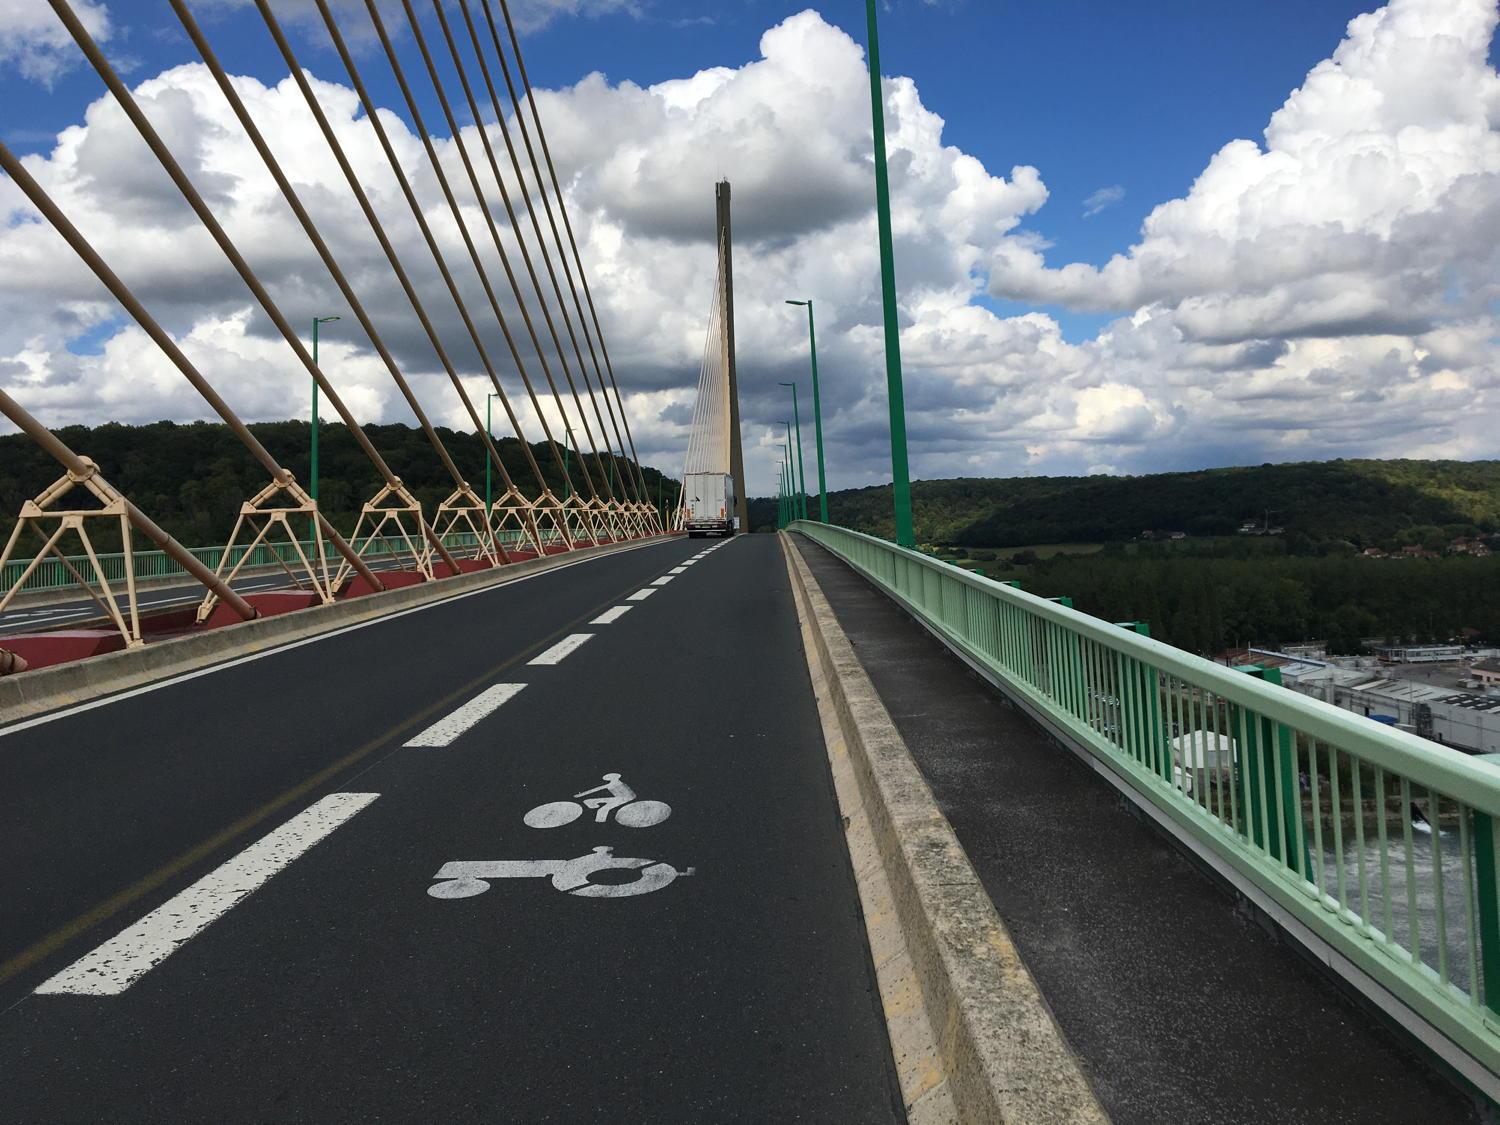 Pont de Brotonne